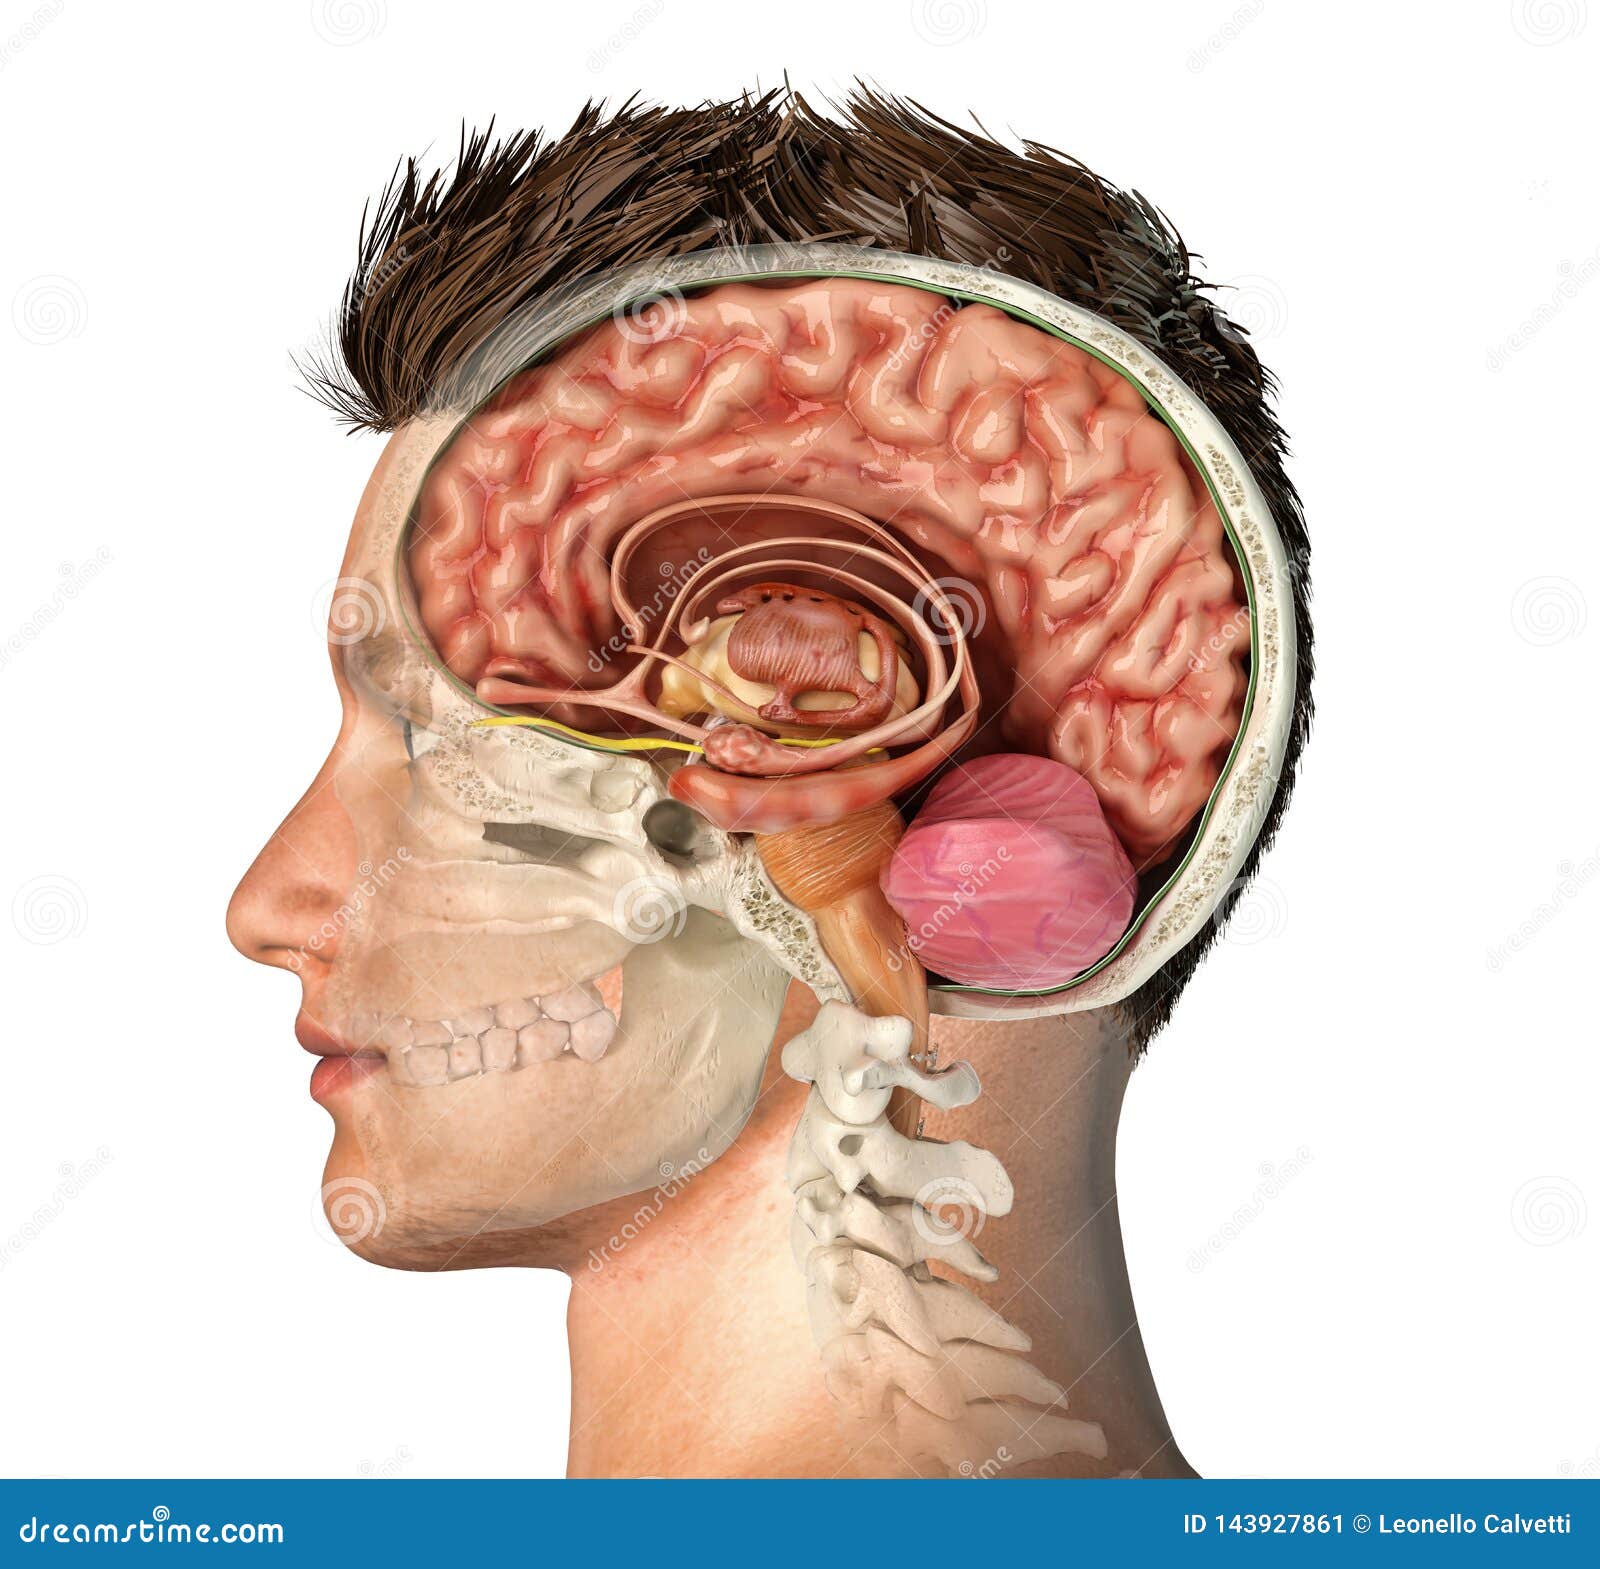 PETSOLA 4Anatomia del Modello Umano Testa del Cranio Muscolo Artista Disegno